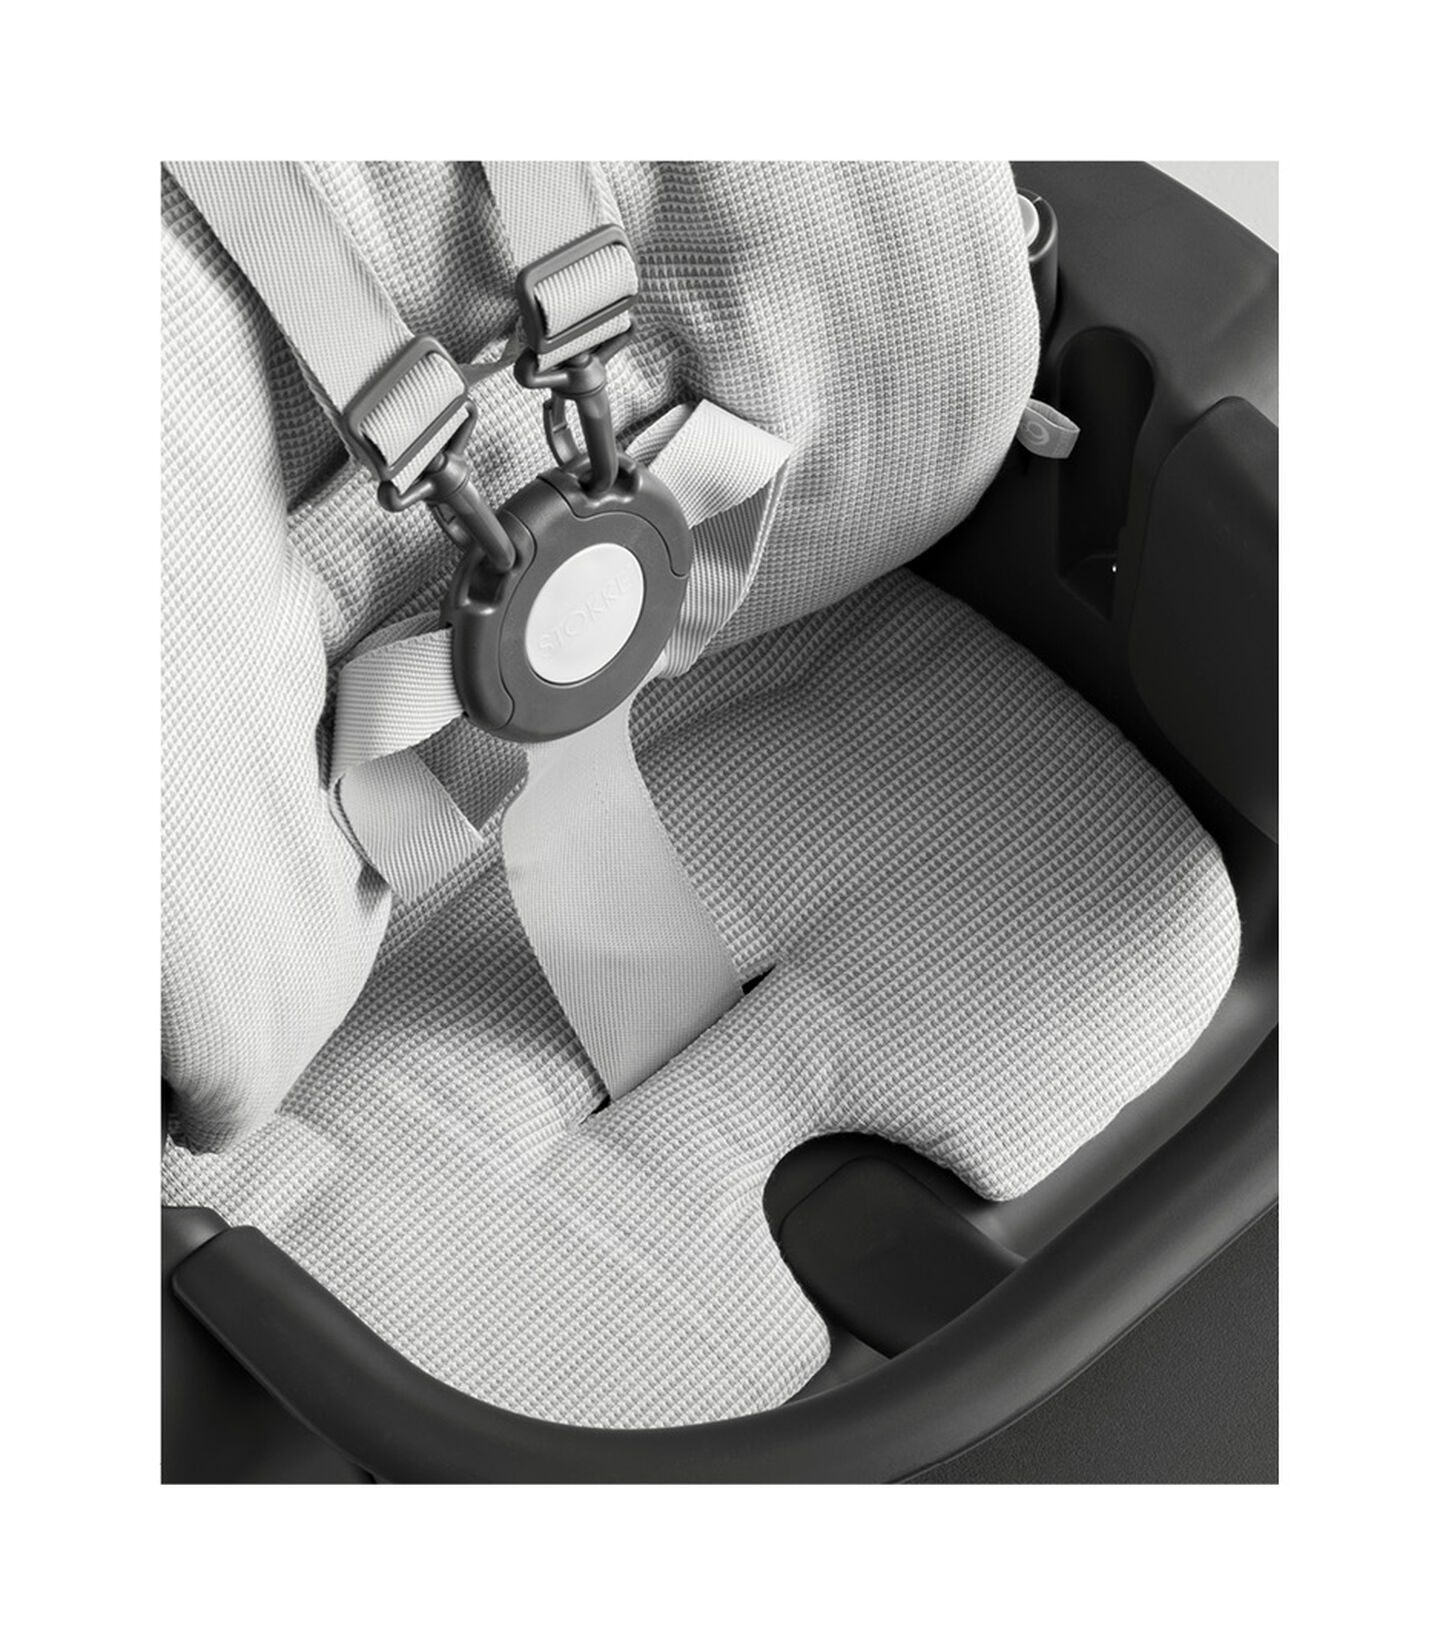 Подушка к комплекту-вставке для малыша Stokke® Steps™ Nordic Grey (цвет Скандинавский серый), Nordic Grey / Скандинавский серый, mainview view 4